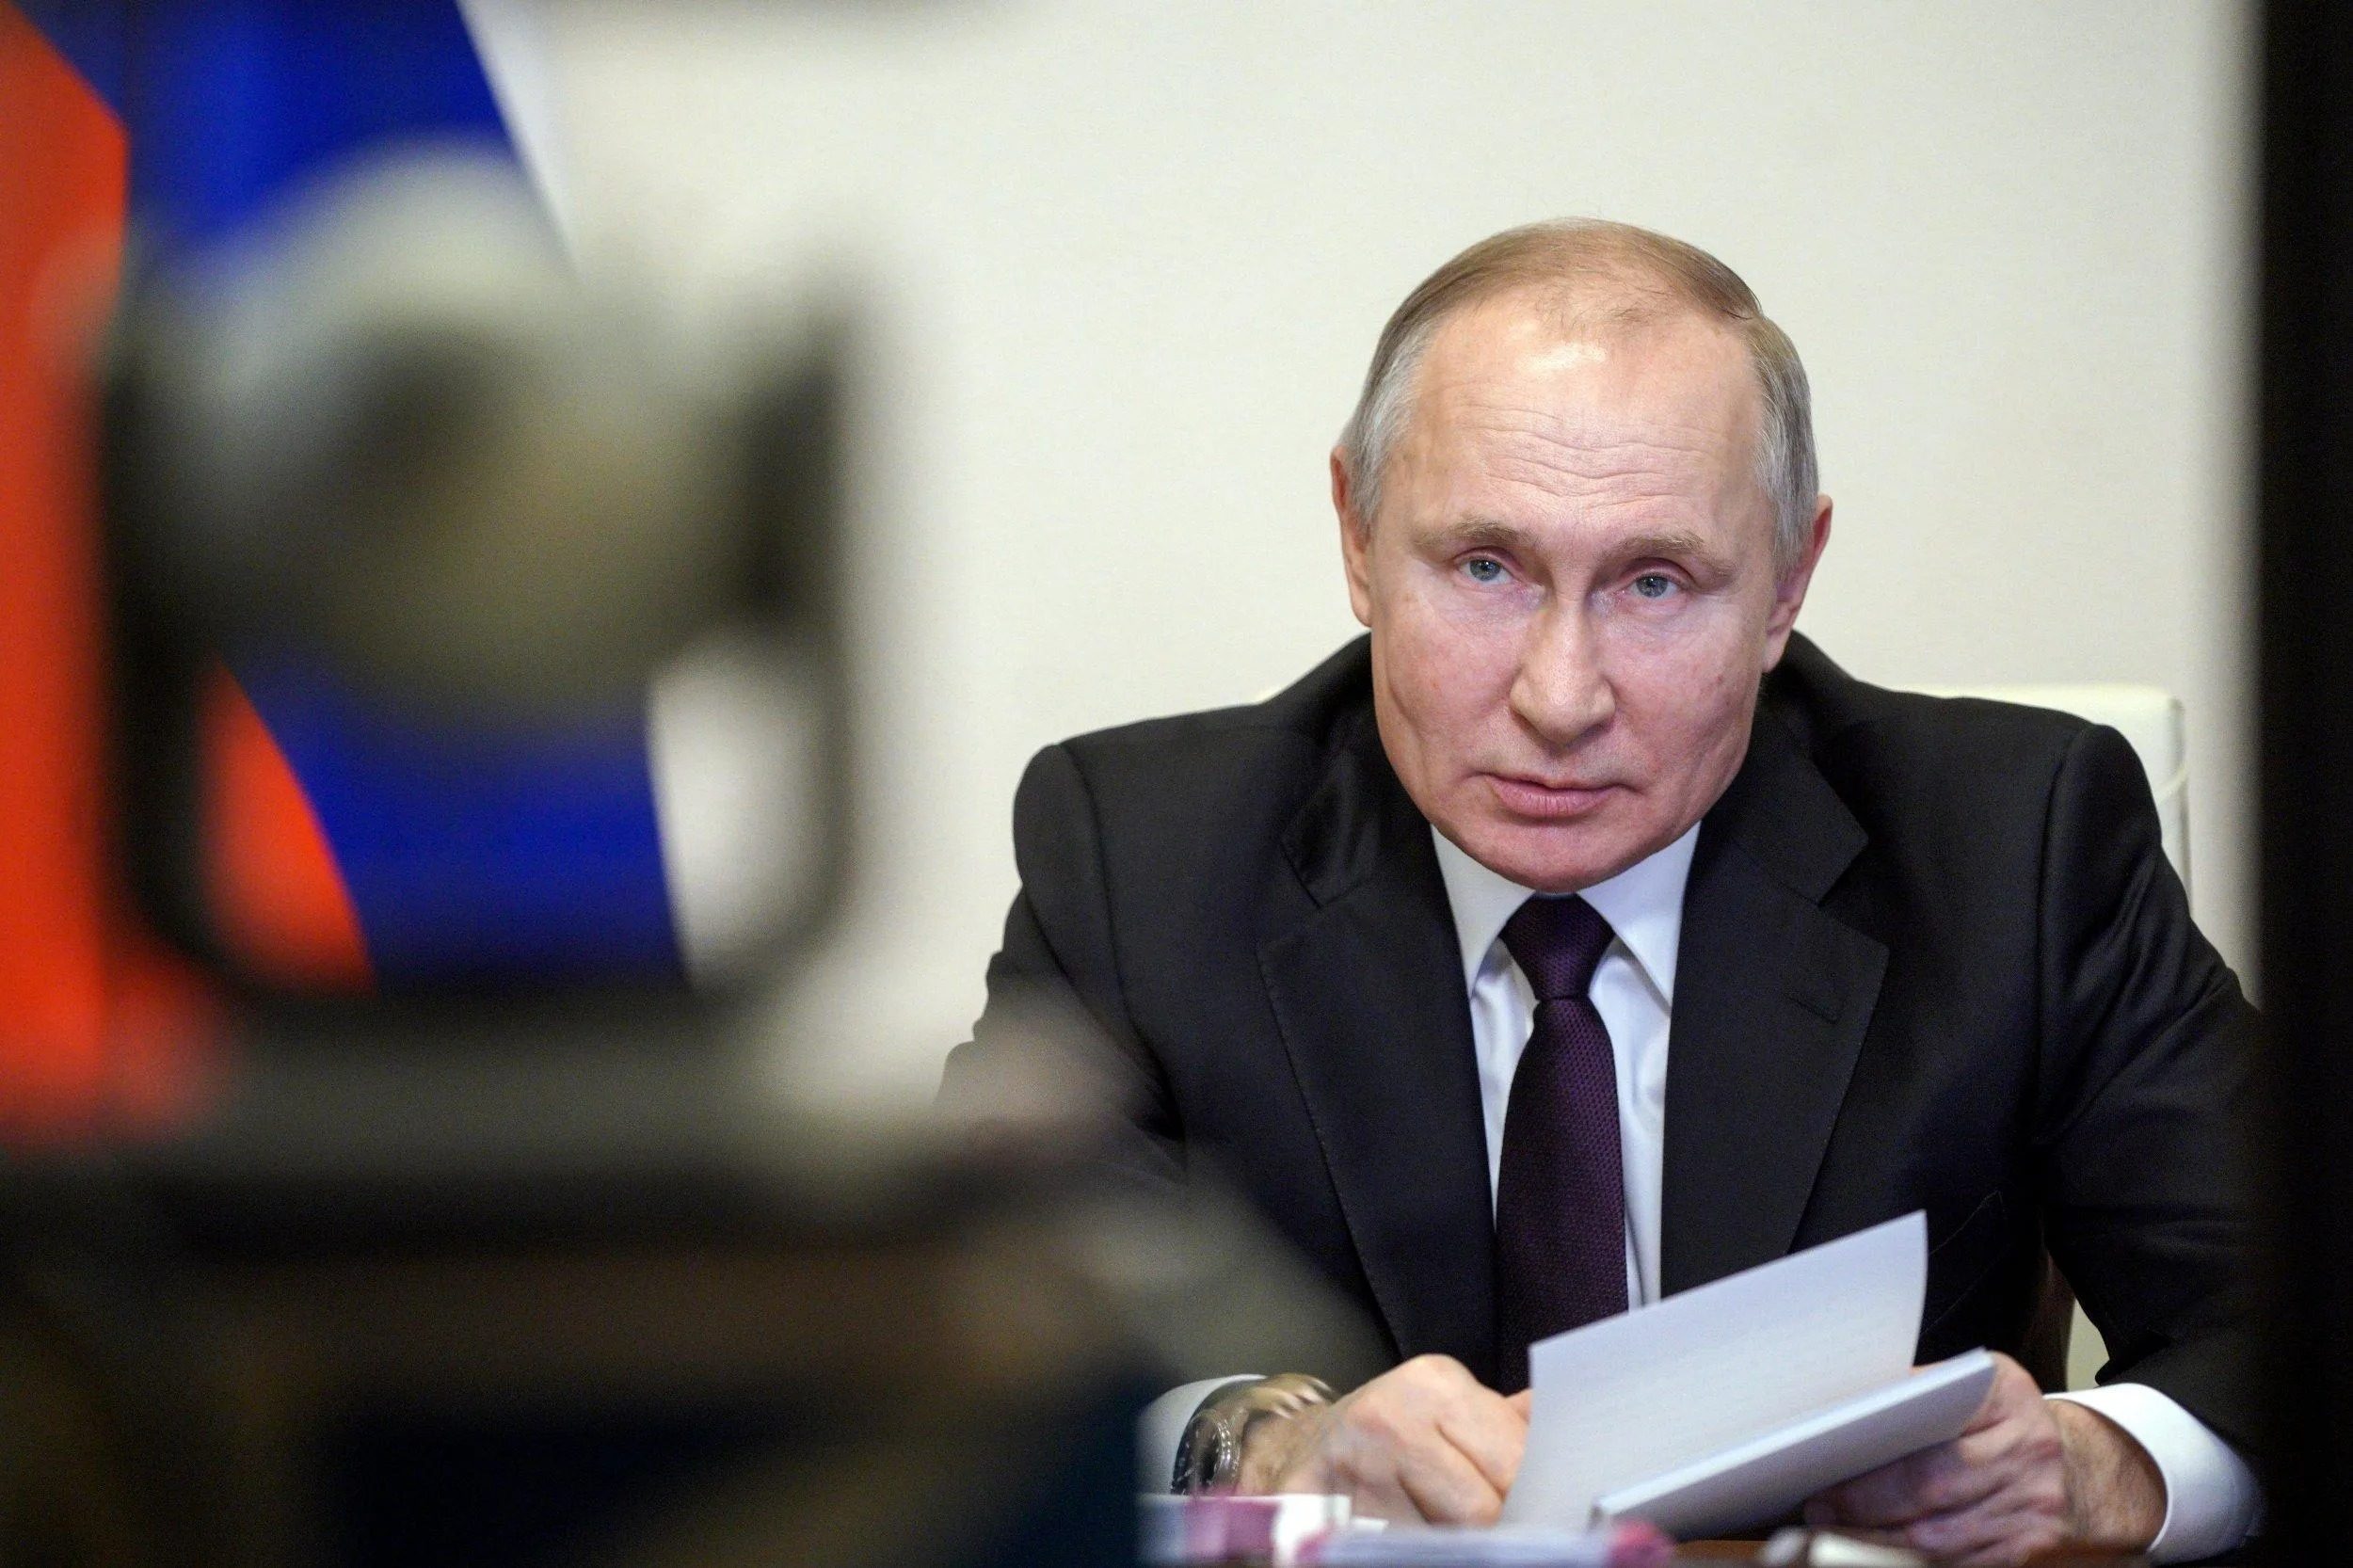 Опасаются покушения: политолог объяснил, почему прячут Путина